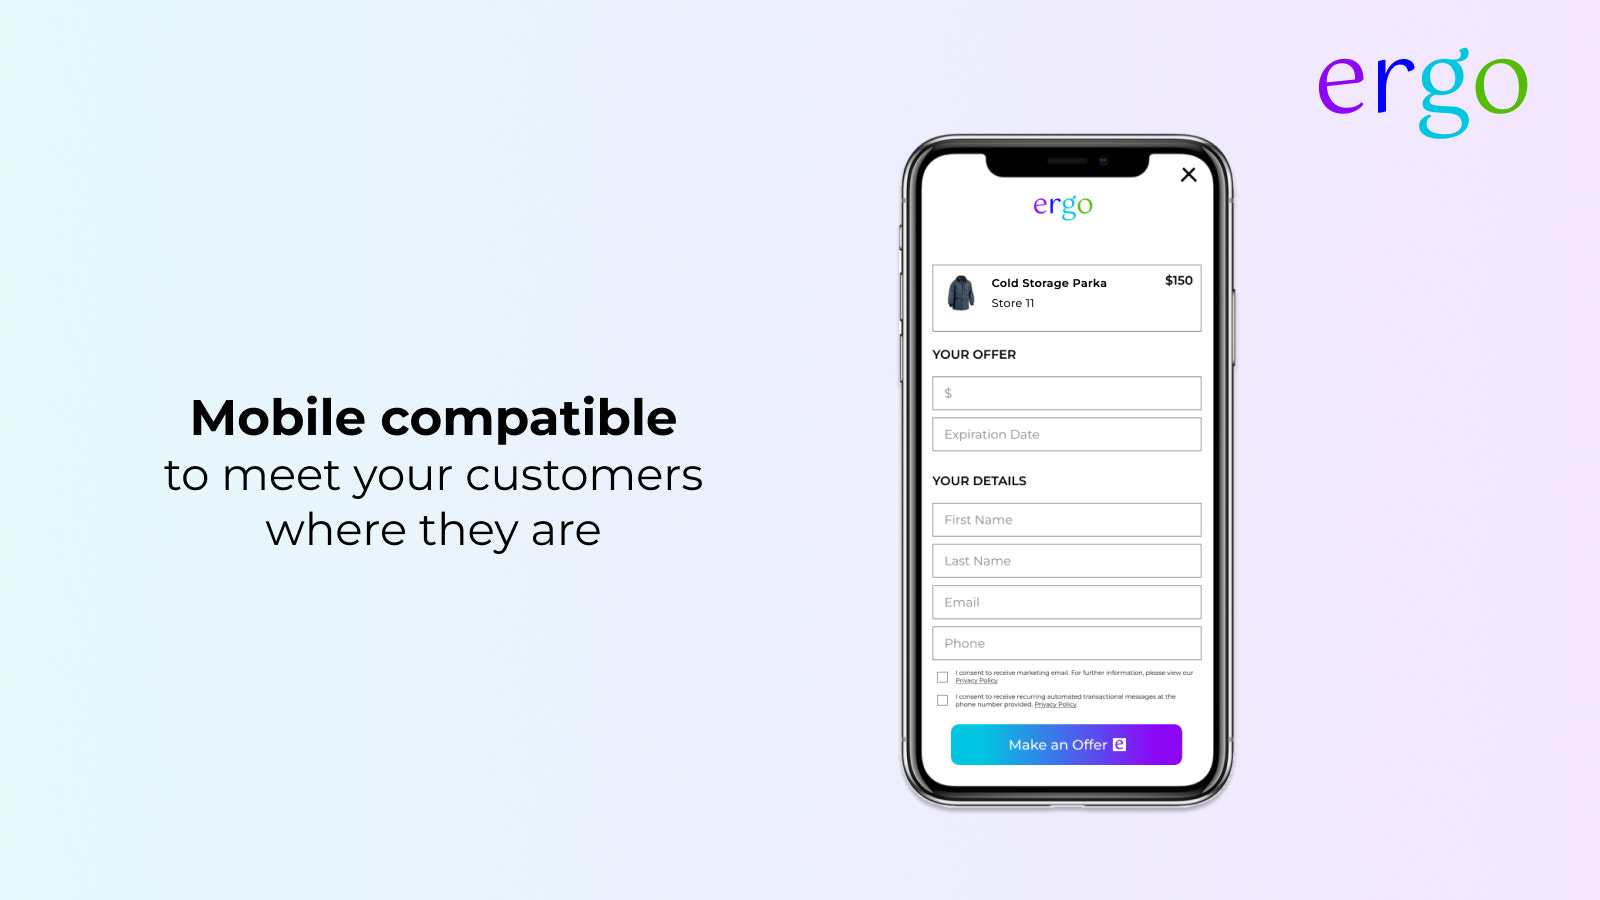 mobil kompatibel for at møde dine kunder, hvor de er$